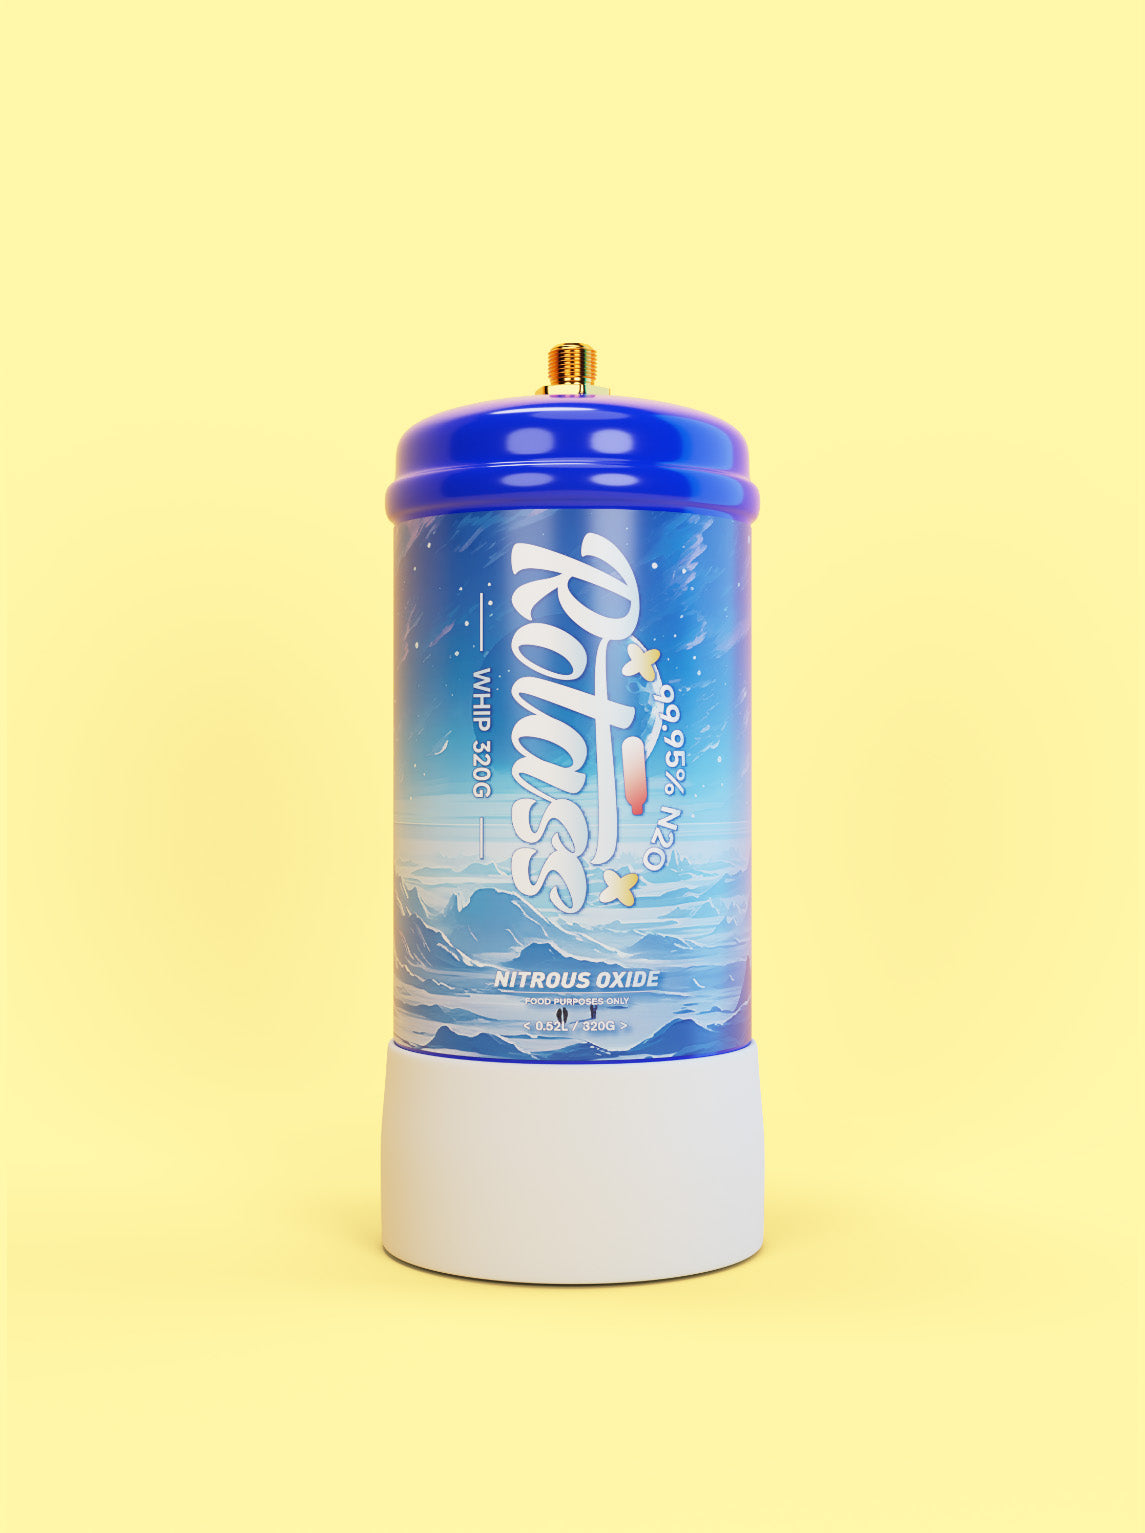 Frontalansicht: Die Gasflasche ist im Antarktis-Style designed, mit dem weißen Logo "Rotass" 320g. Der Hintergrund ist hellgelb.